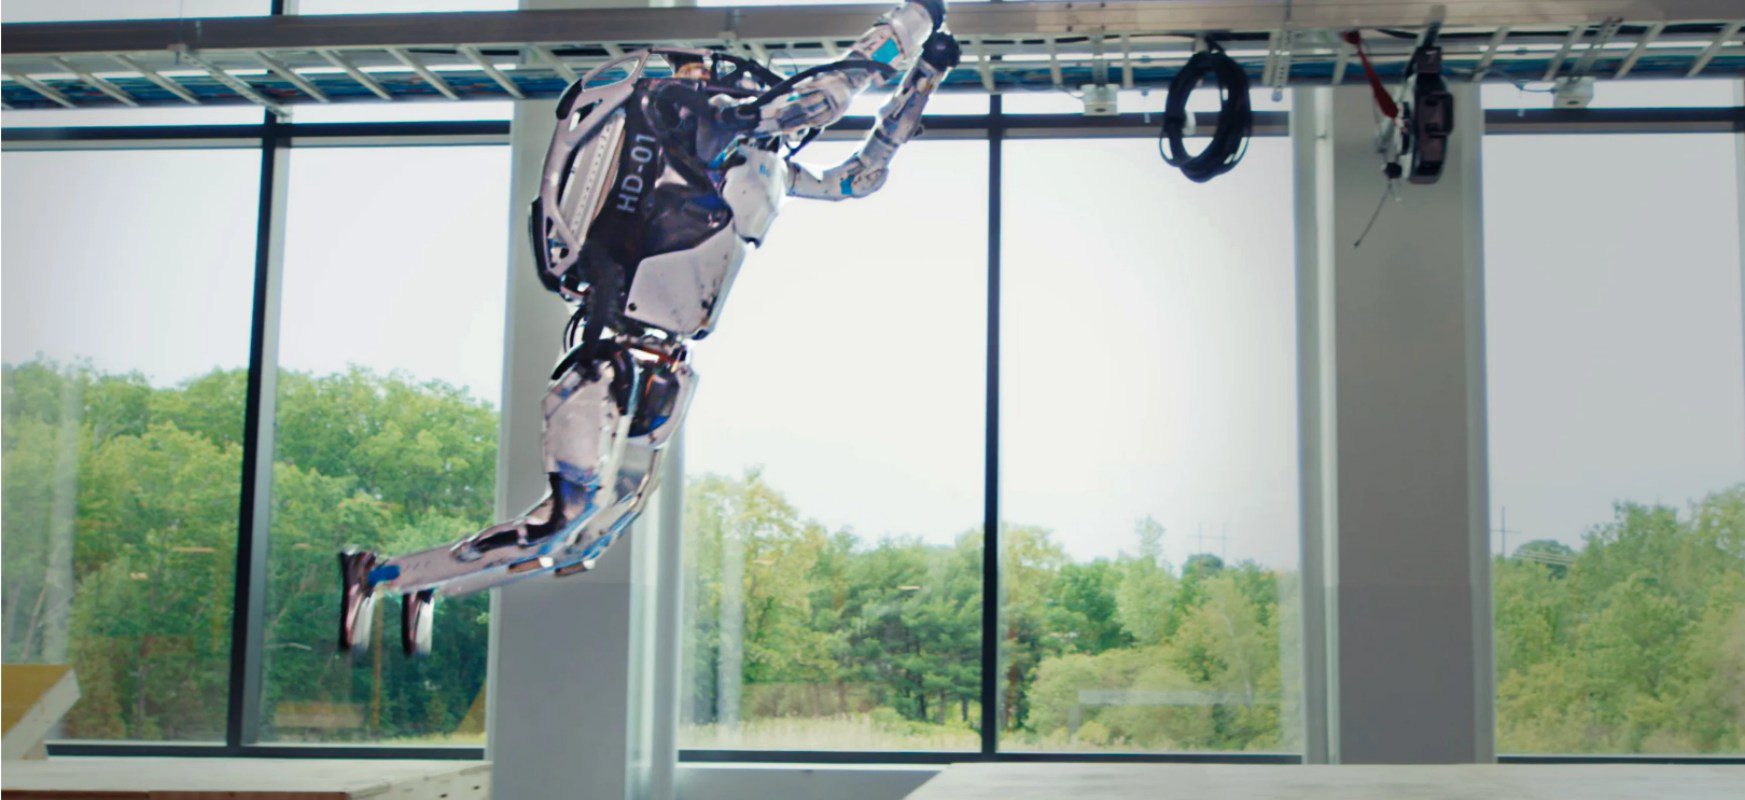 Video des Tages: Roboter von Boston Dynamics umrundet den Hindernisparcours und rollt rückwärts 15